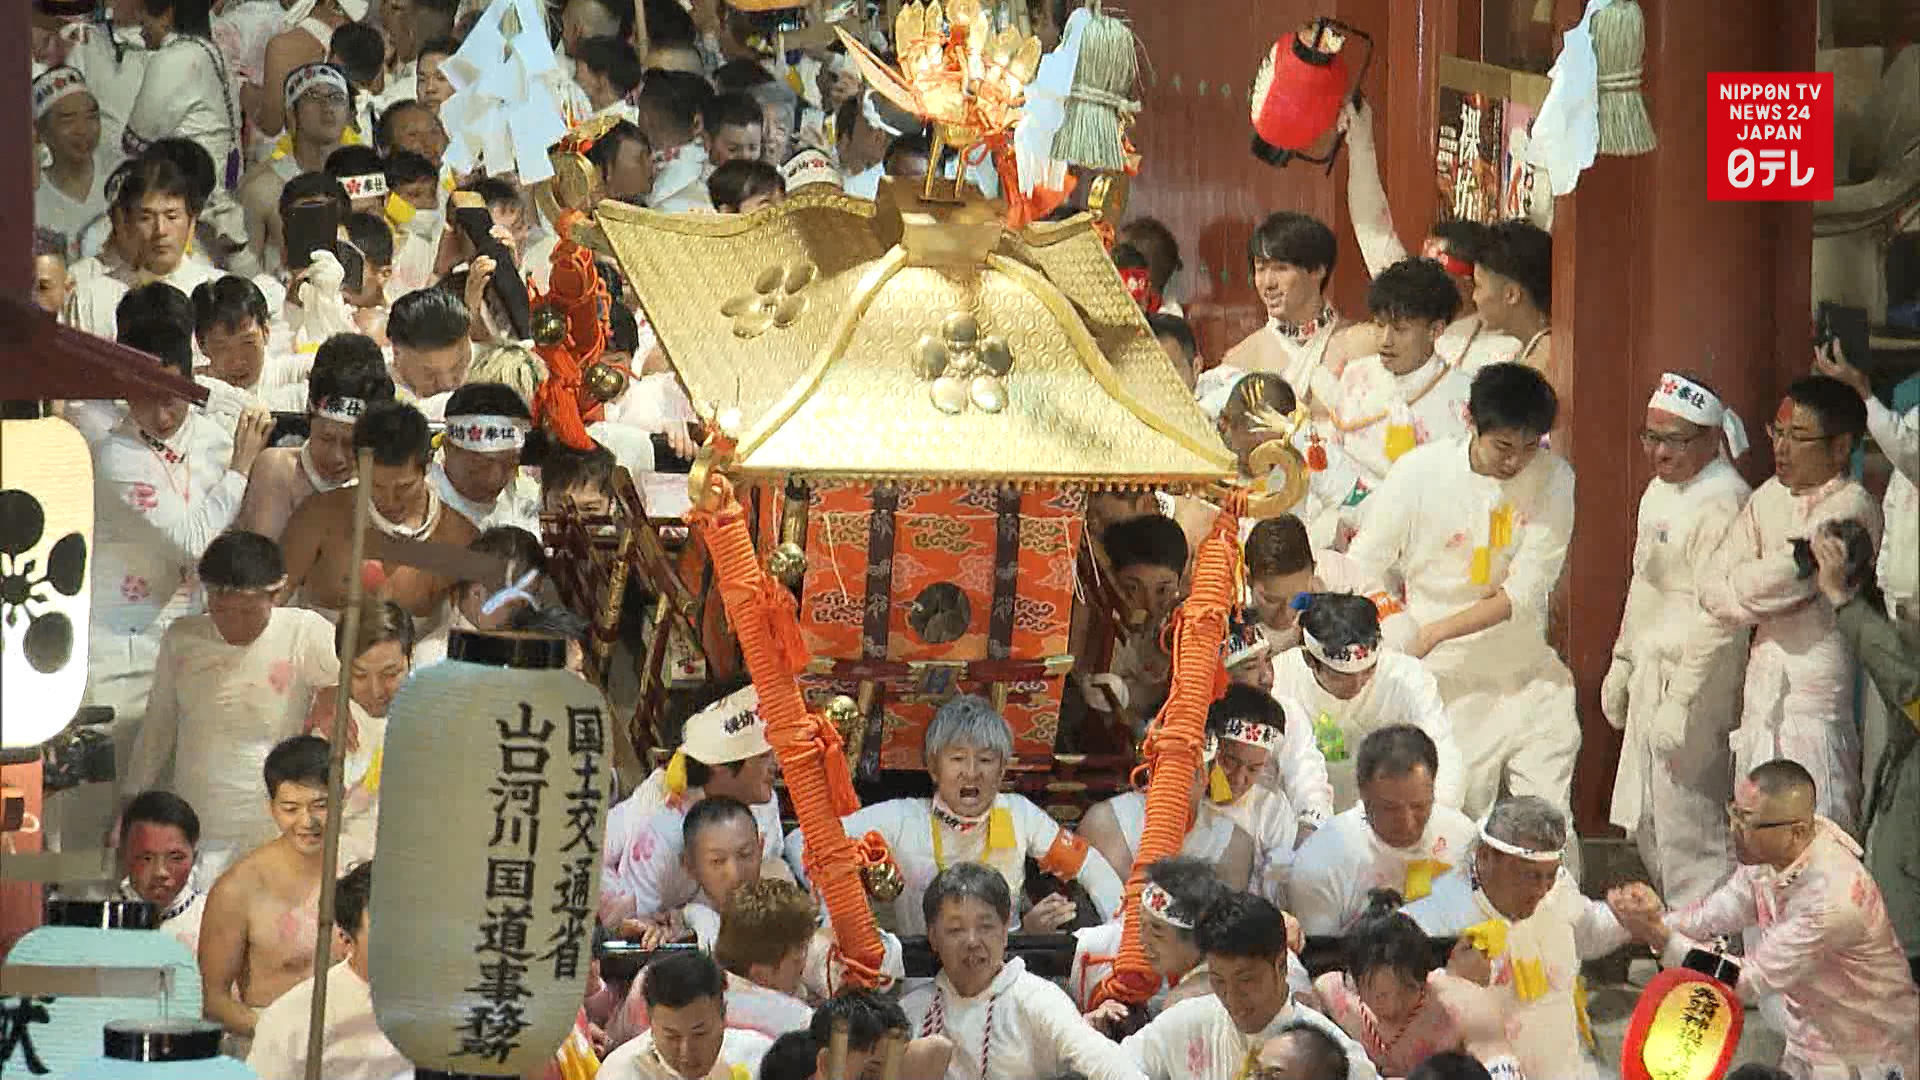 1000-year-old Hadakabo festival